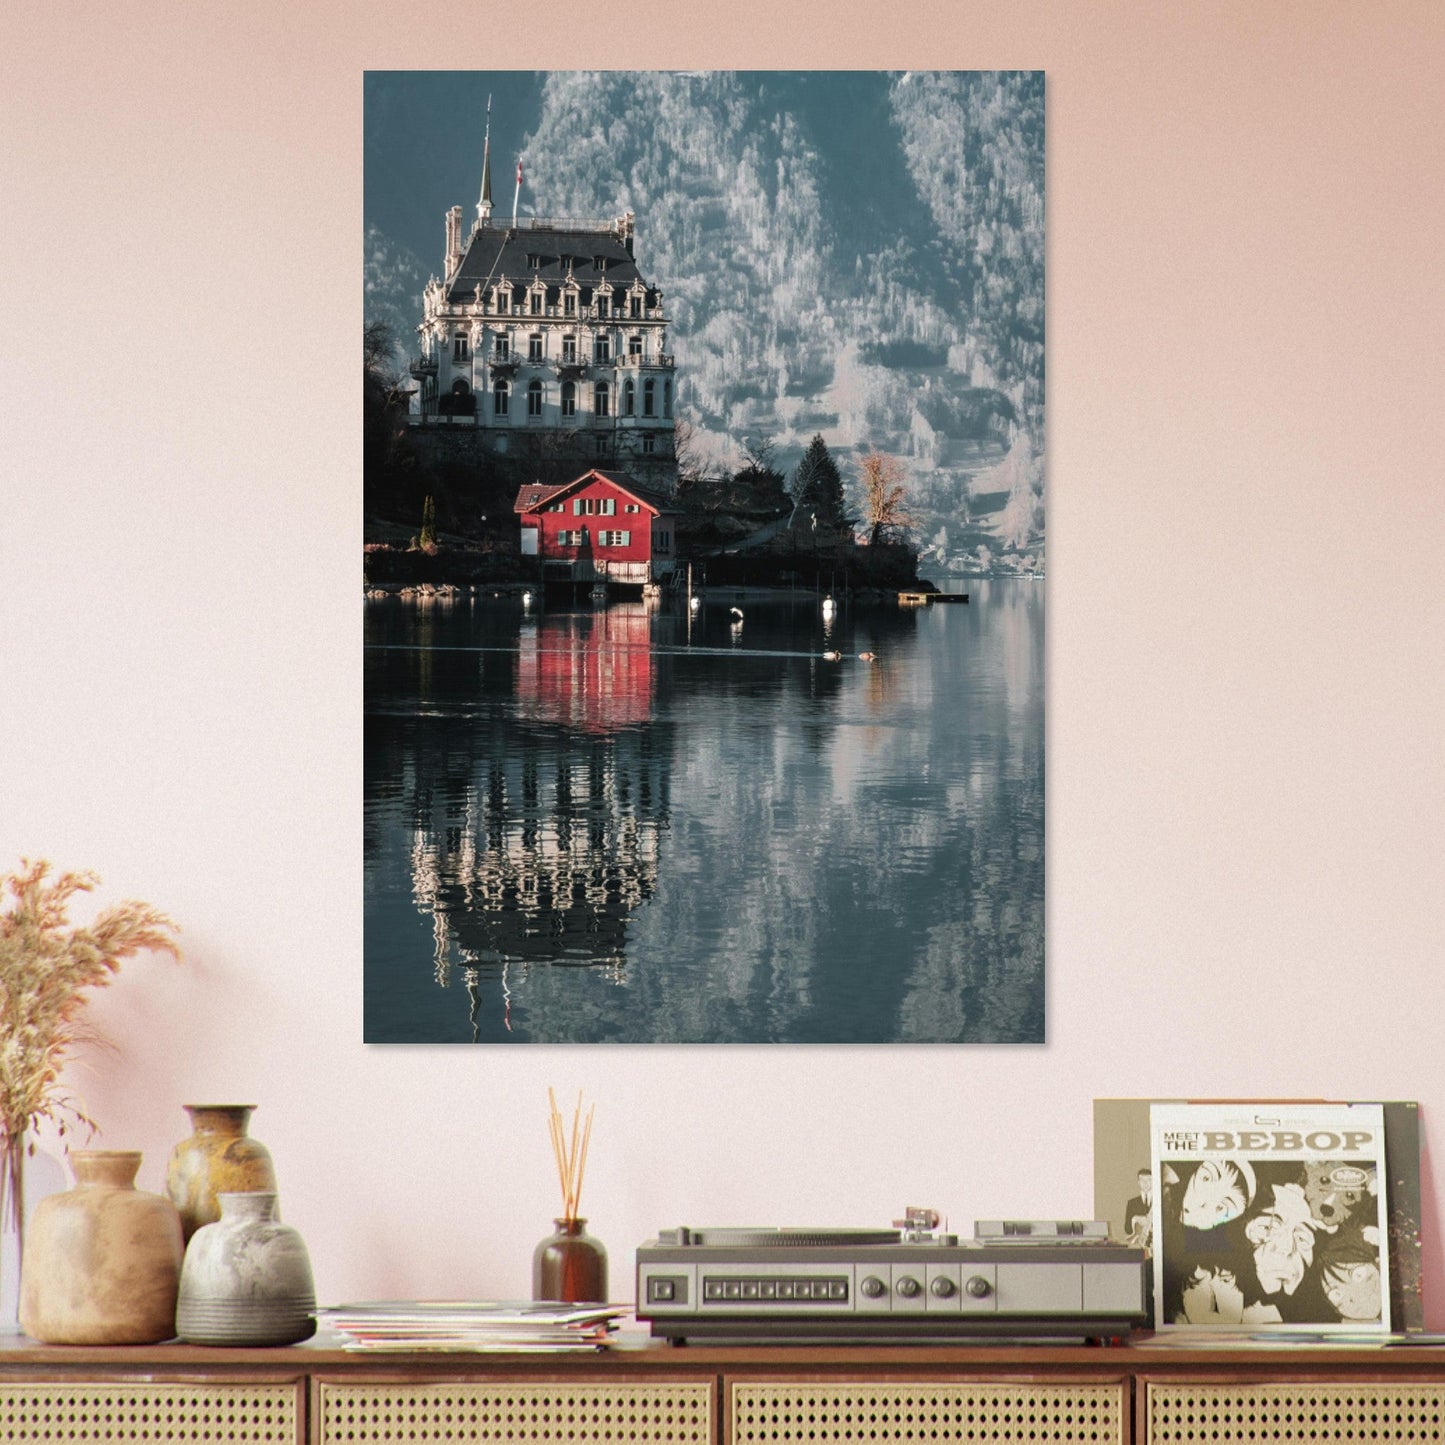 Vente Photo du lac de Brienz, Iseltwald, Suisse - Tableau photo paysage